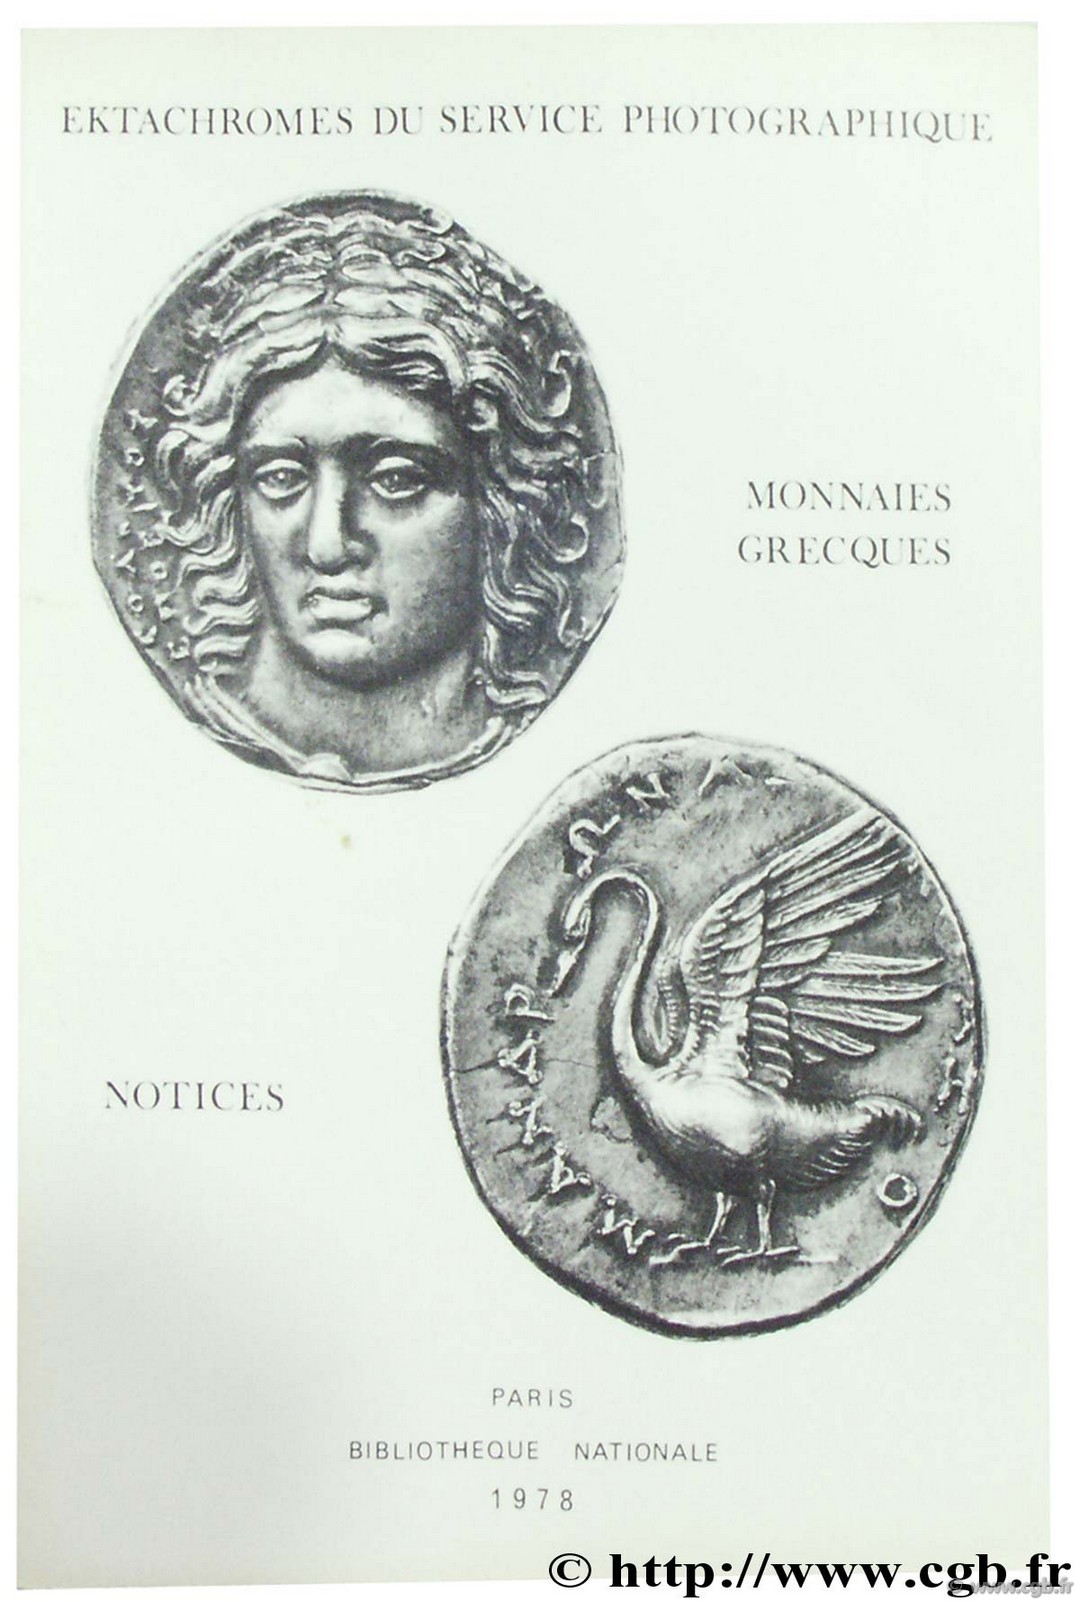 Choix de monnaies grecques, Bibliothèque nationale photothèque PLOYART B., NICOLET H.